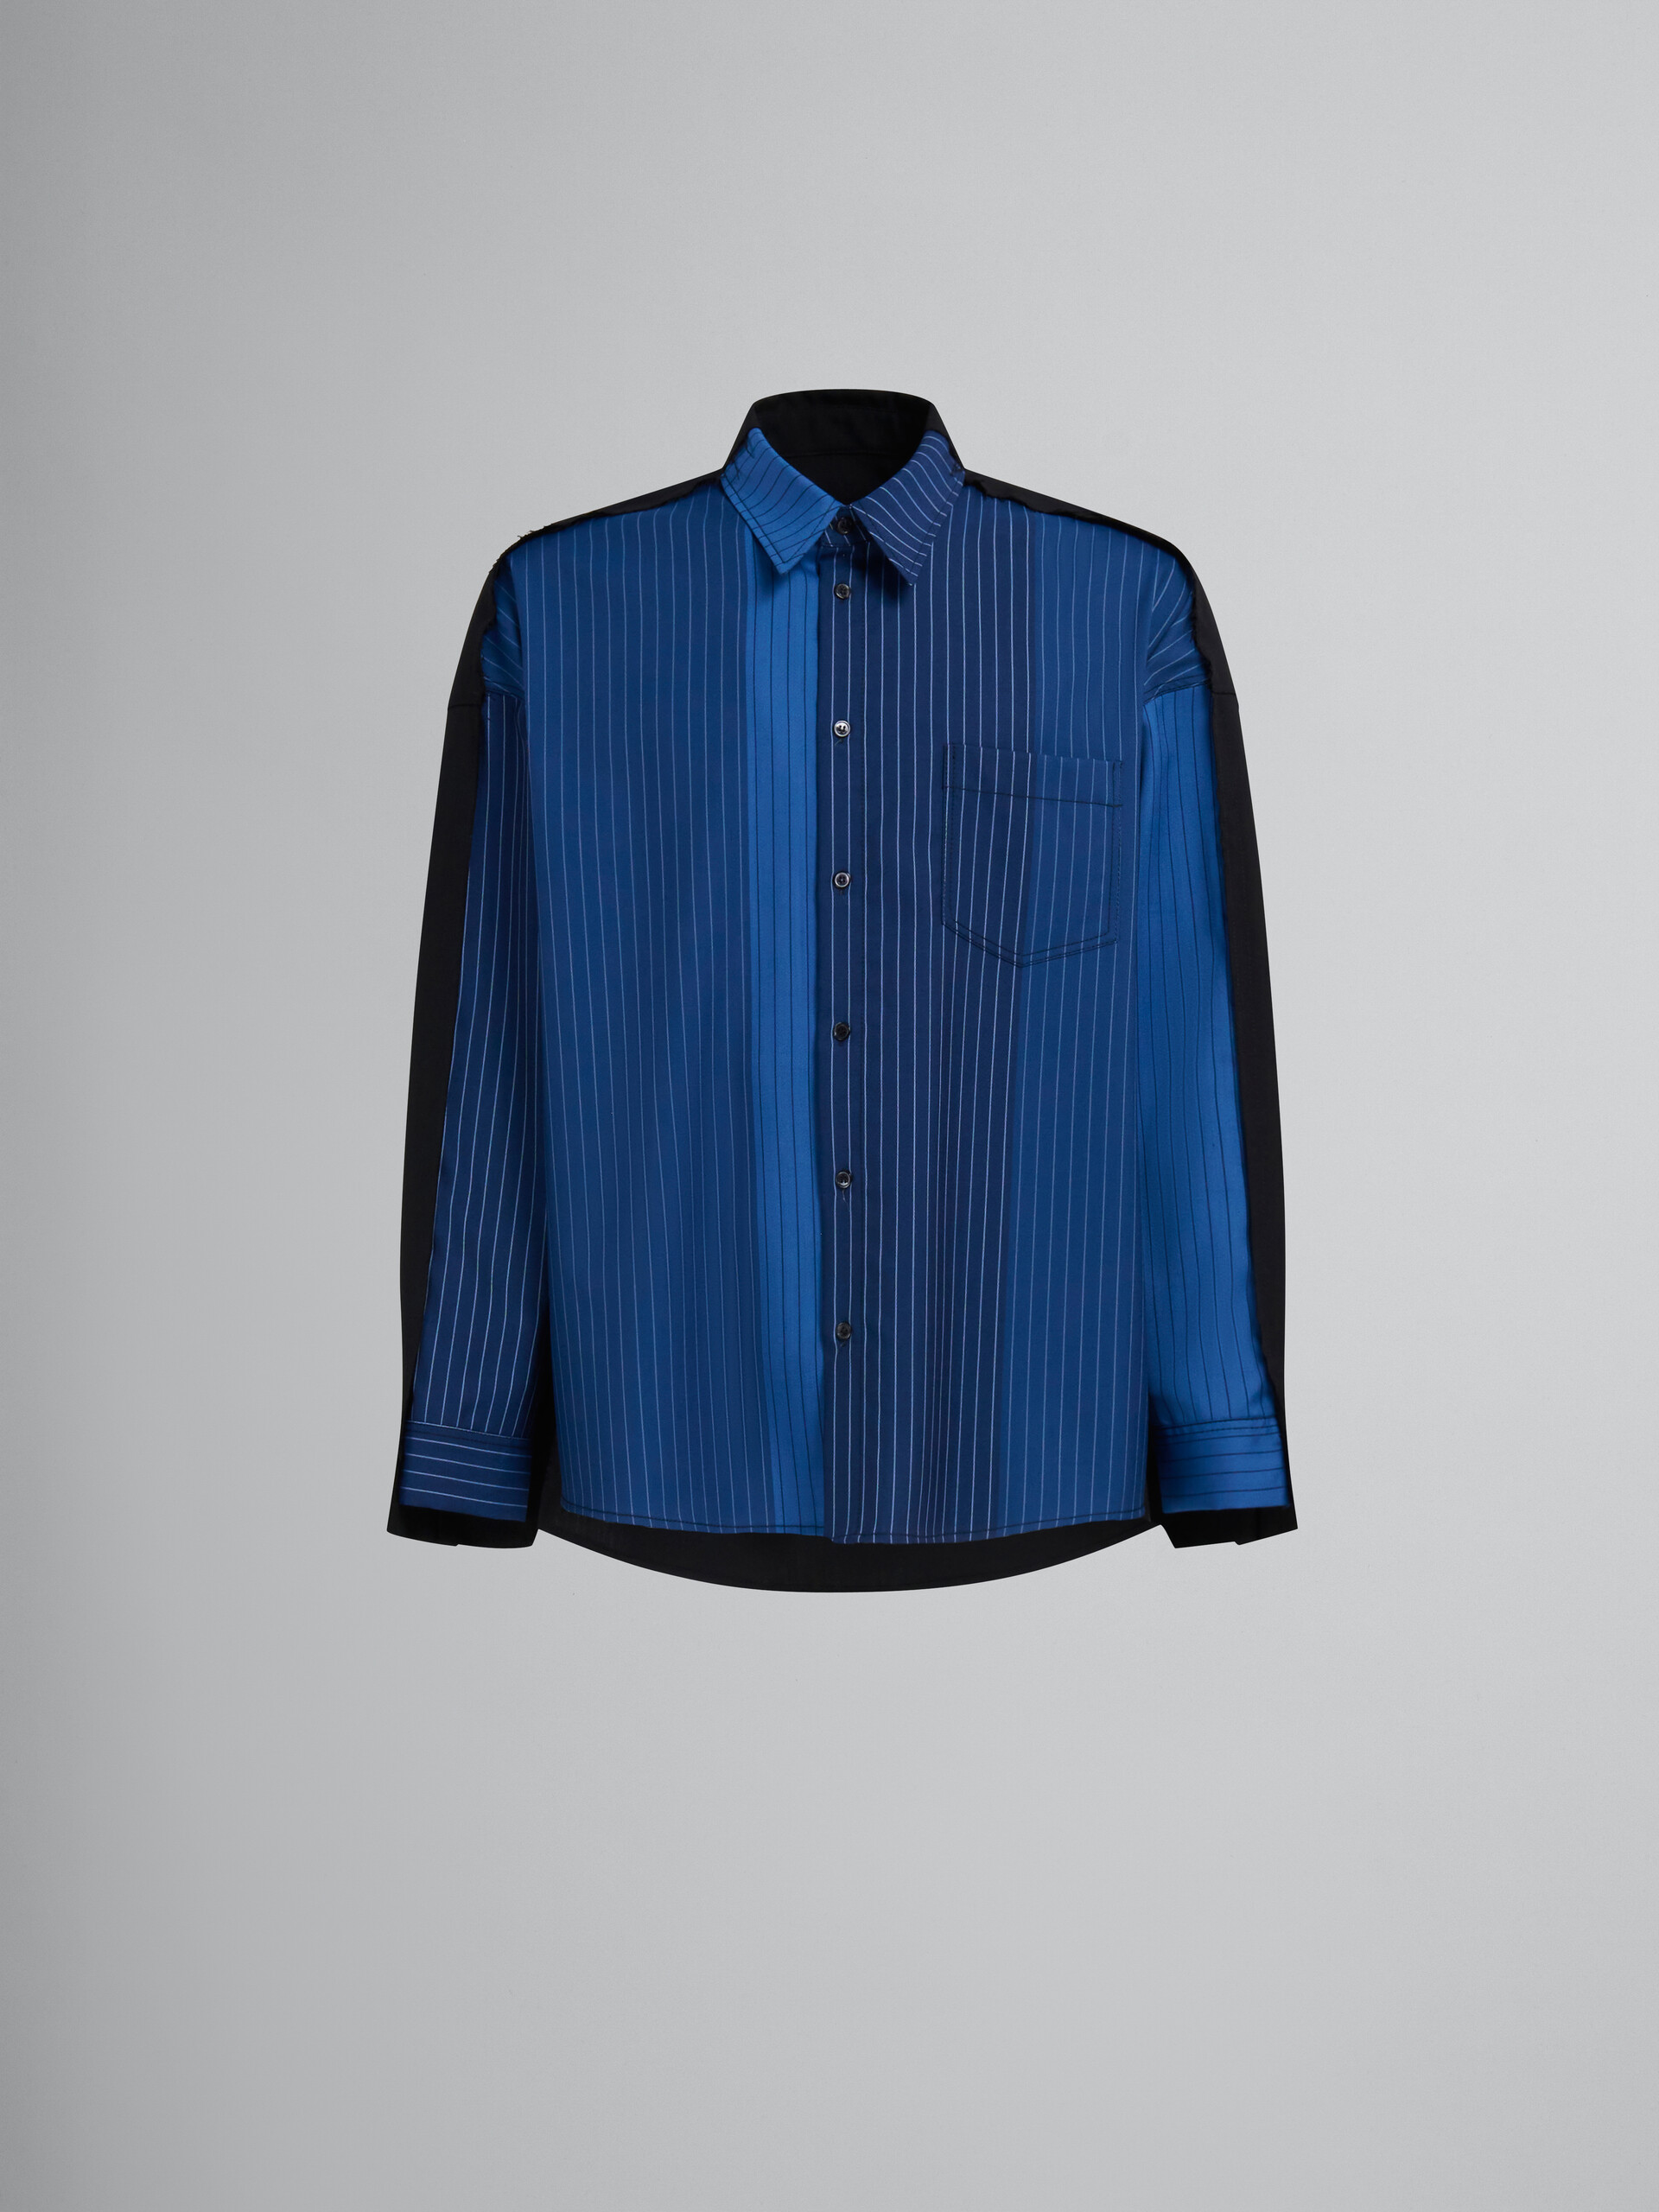 Camisa de lana azul degradado con raya diplomática y espalda en contraste - Camisas - Image 1